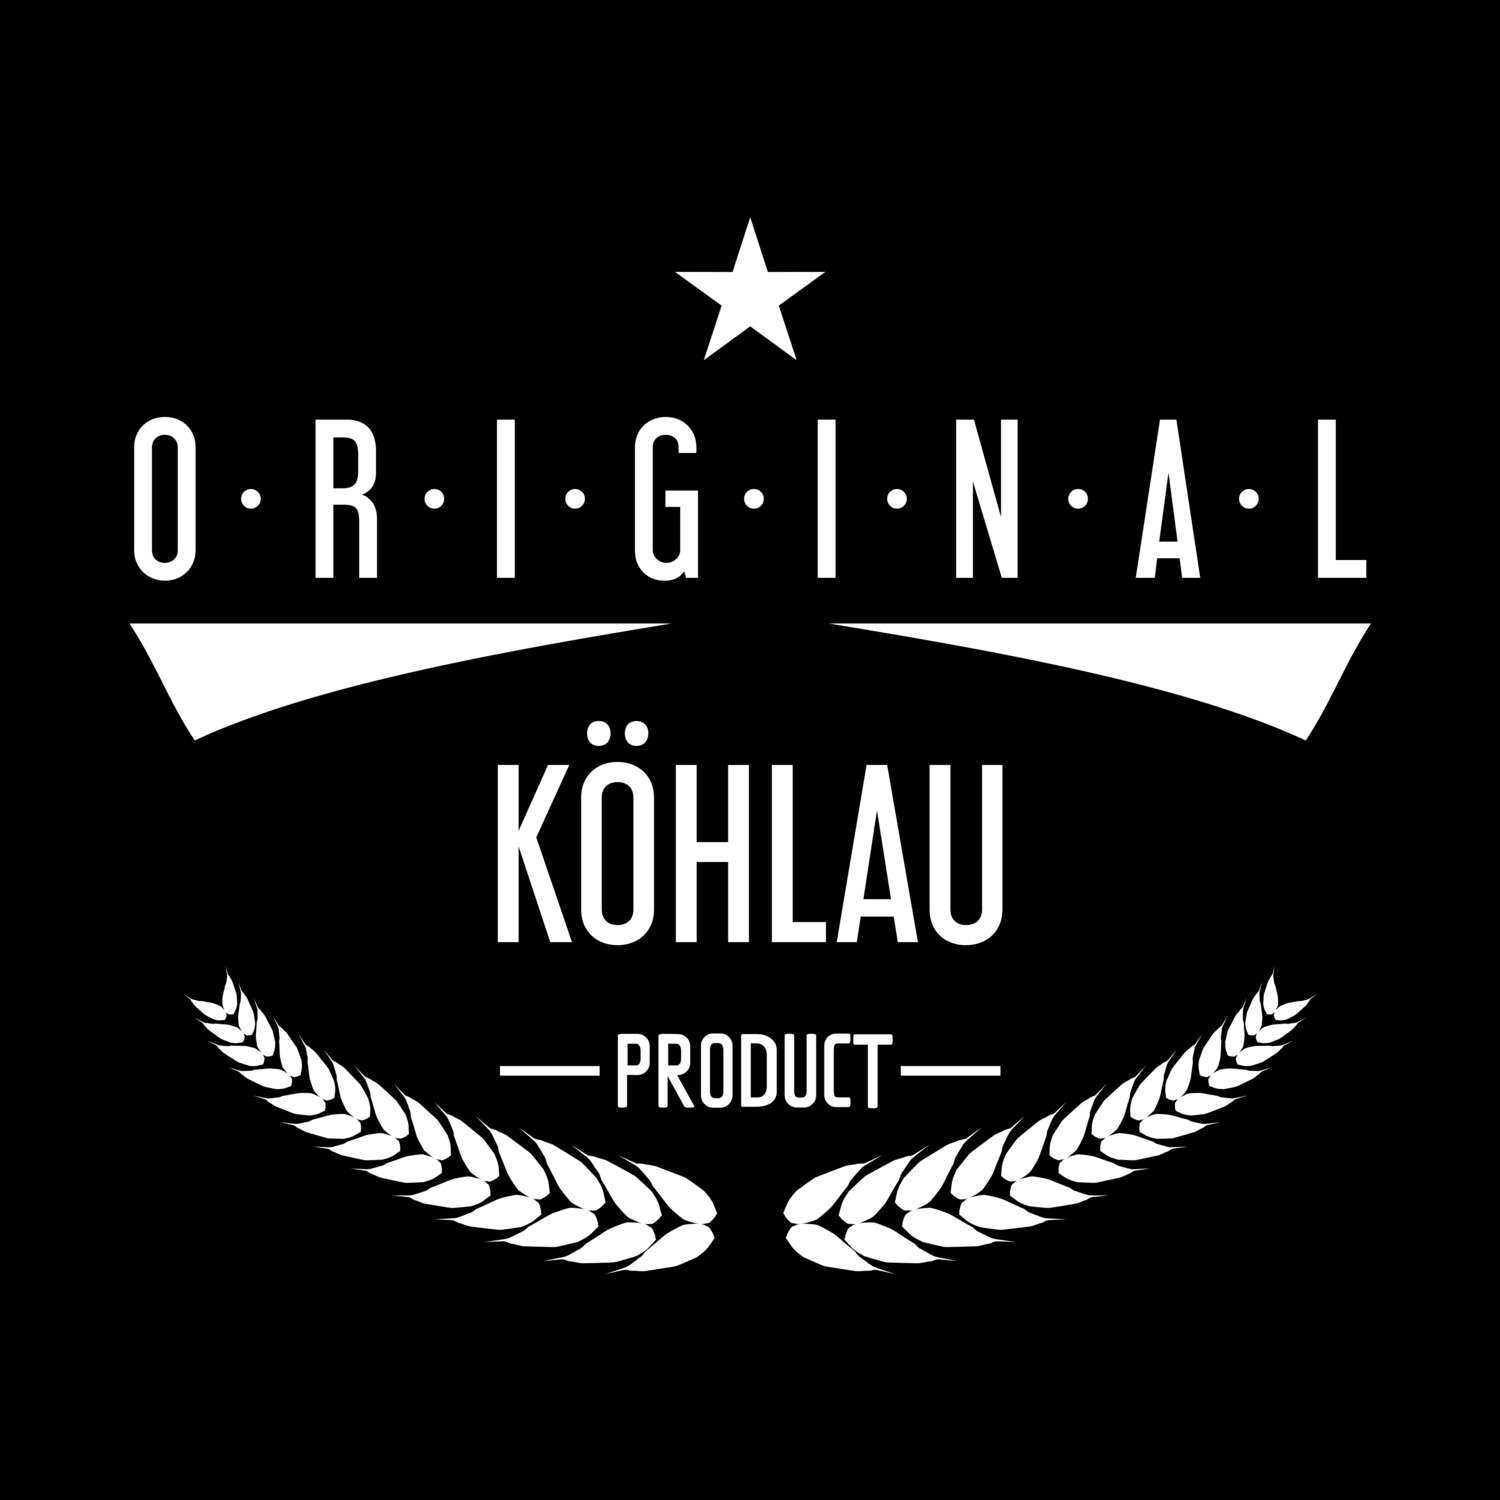 Köhlau T-Shirt »Original Product«